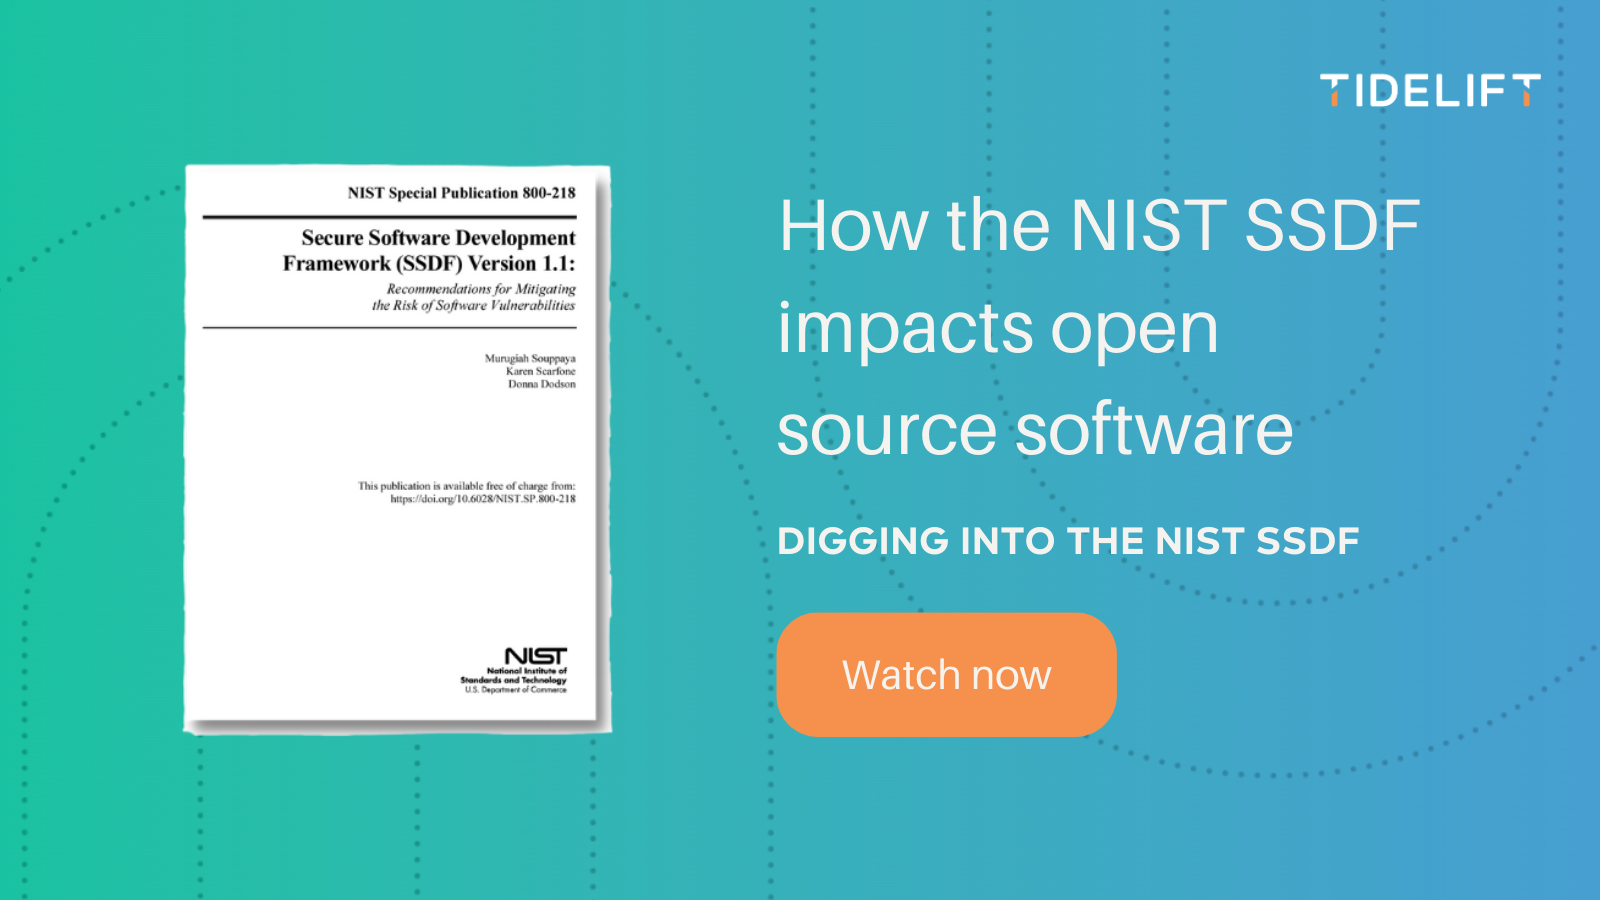 Digging into the NIST Secure Software Development Framework